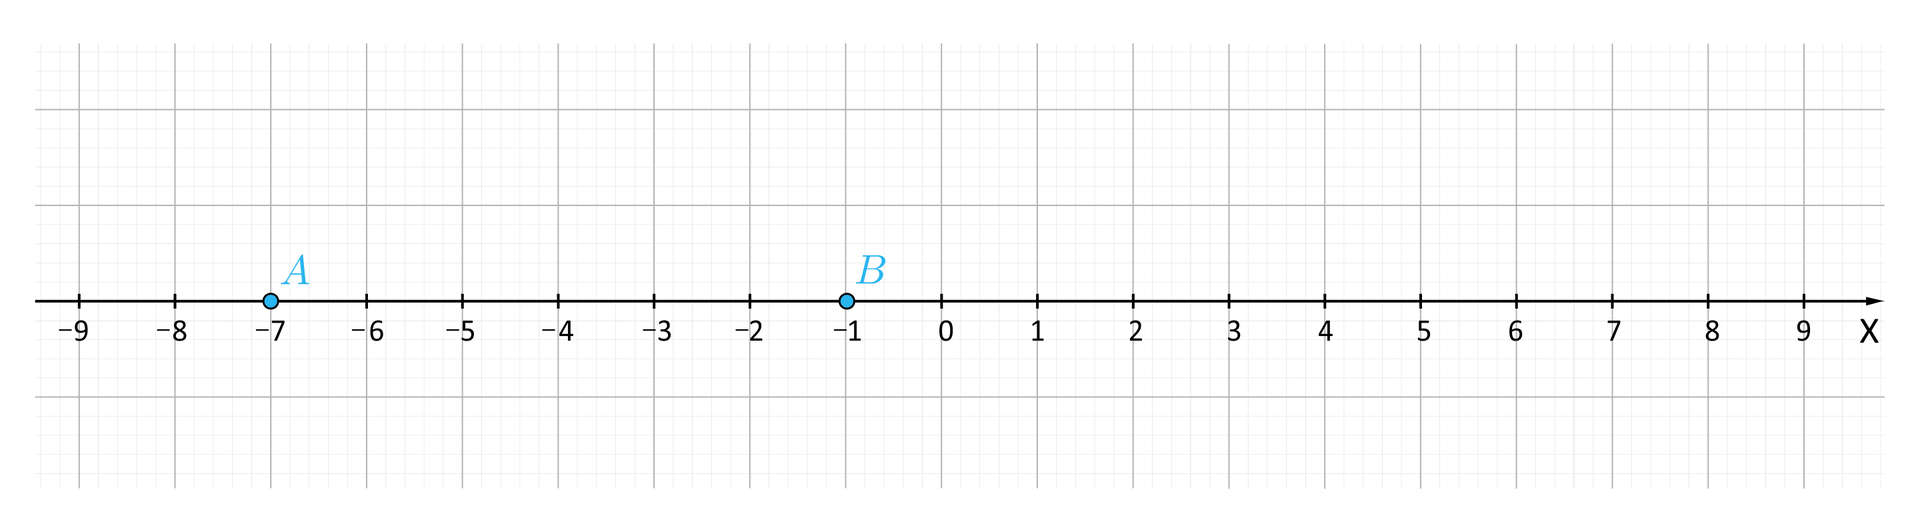 Ilustracja przedstawia oś iks na której opisano wartości od minus dziewięć do dziewięć. Punkt minus siedem opisano jako a, punkt minus jeden opisano jako be.